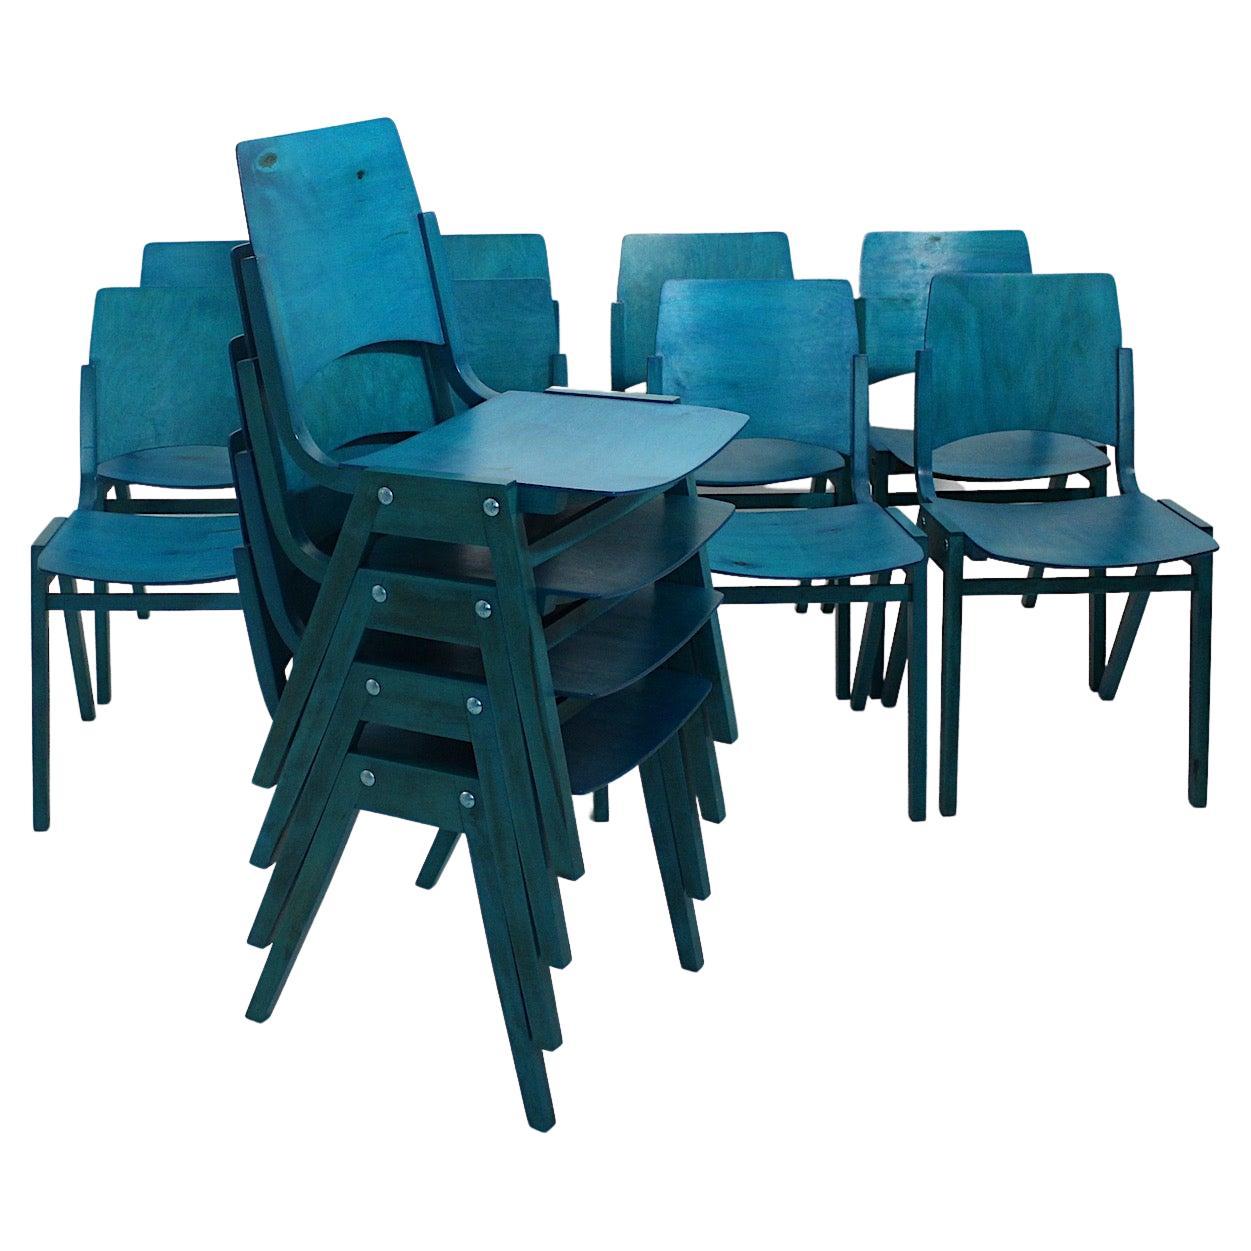 Roland Rainer, douze chaises de salle à manger bleues modernes du milieu du siècle dernier, Vienne, 1952